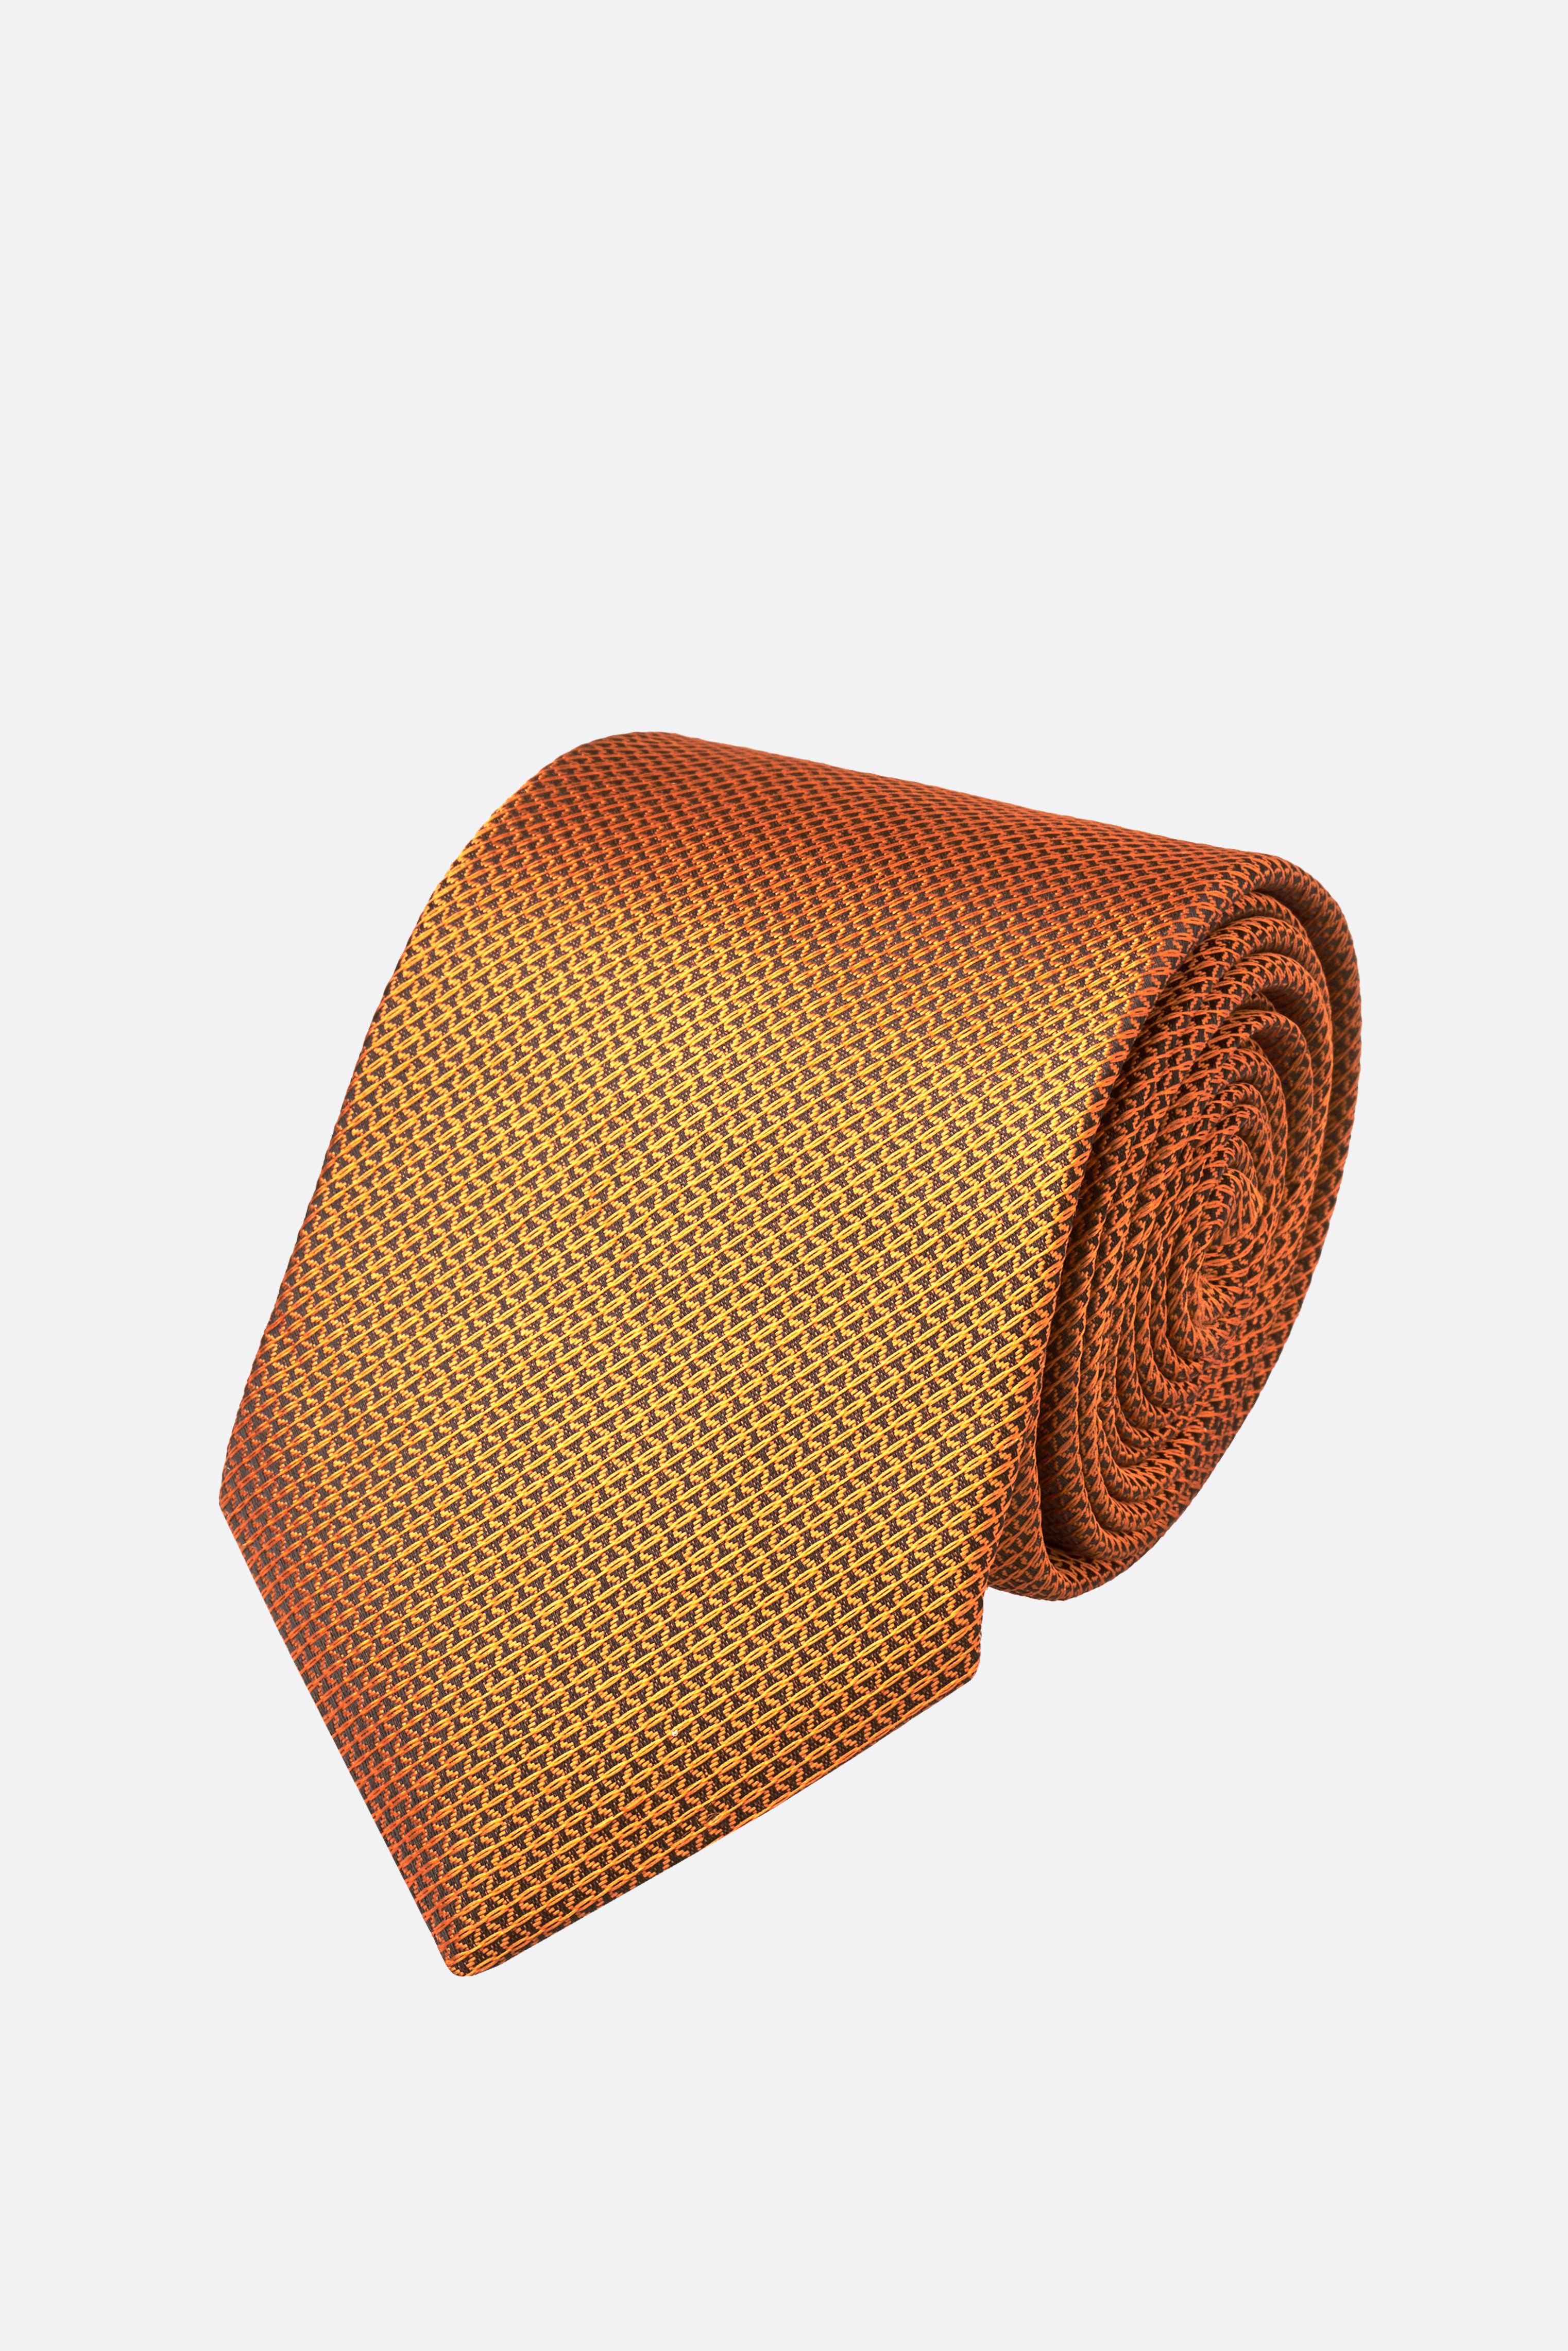 Santoro Milan Orange Tie